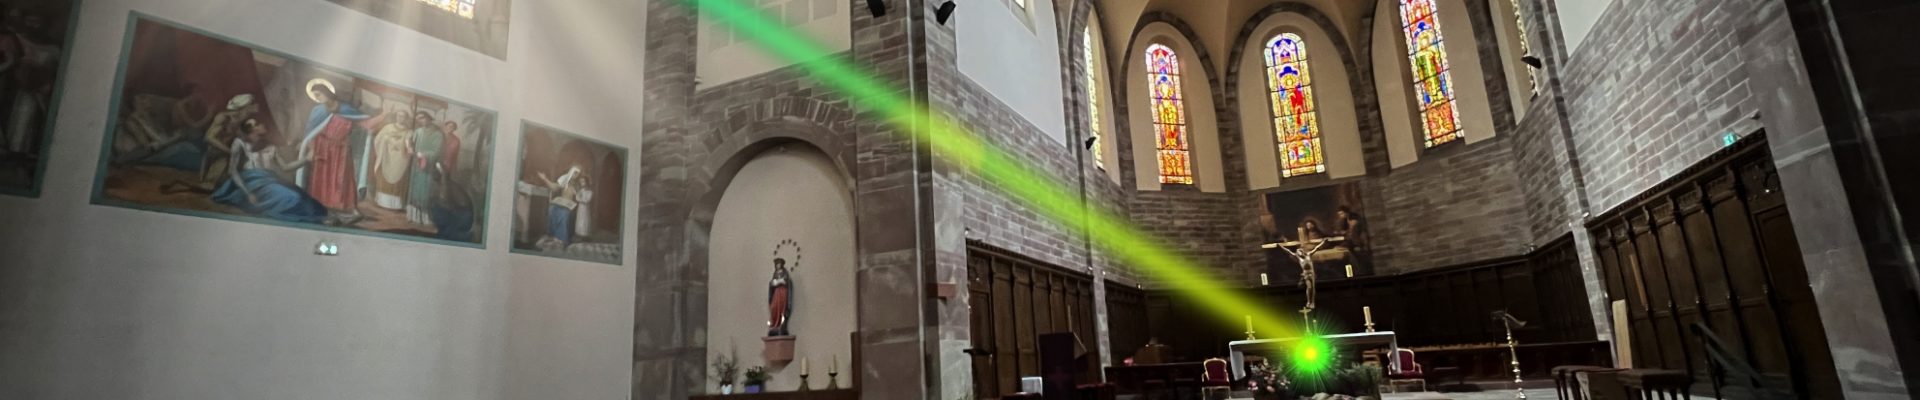 [Poisson] Le rayon vert bientôt à l’église Saint-Louis de la Robertsau ?